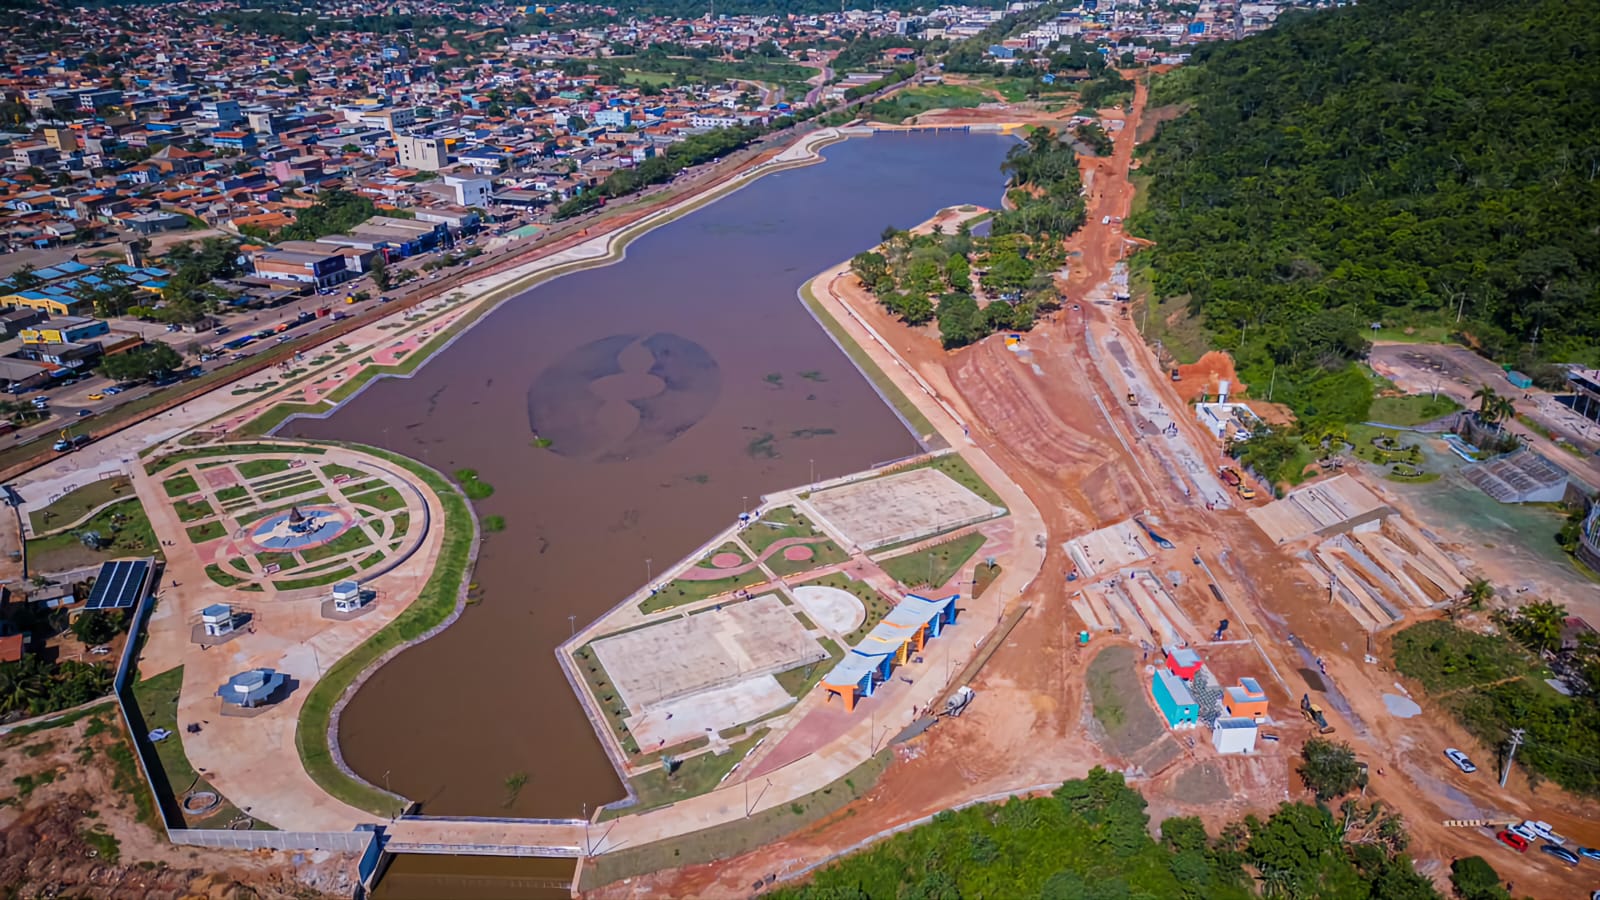 Complexo Turístico de Parauapebas será inaugurado sexta-feira (16) com  programação de Natal - Portal Pebinha de Açúcar - 16 anos